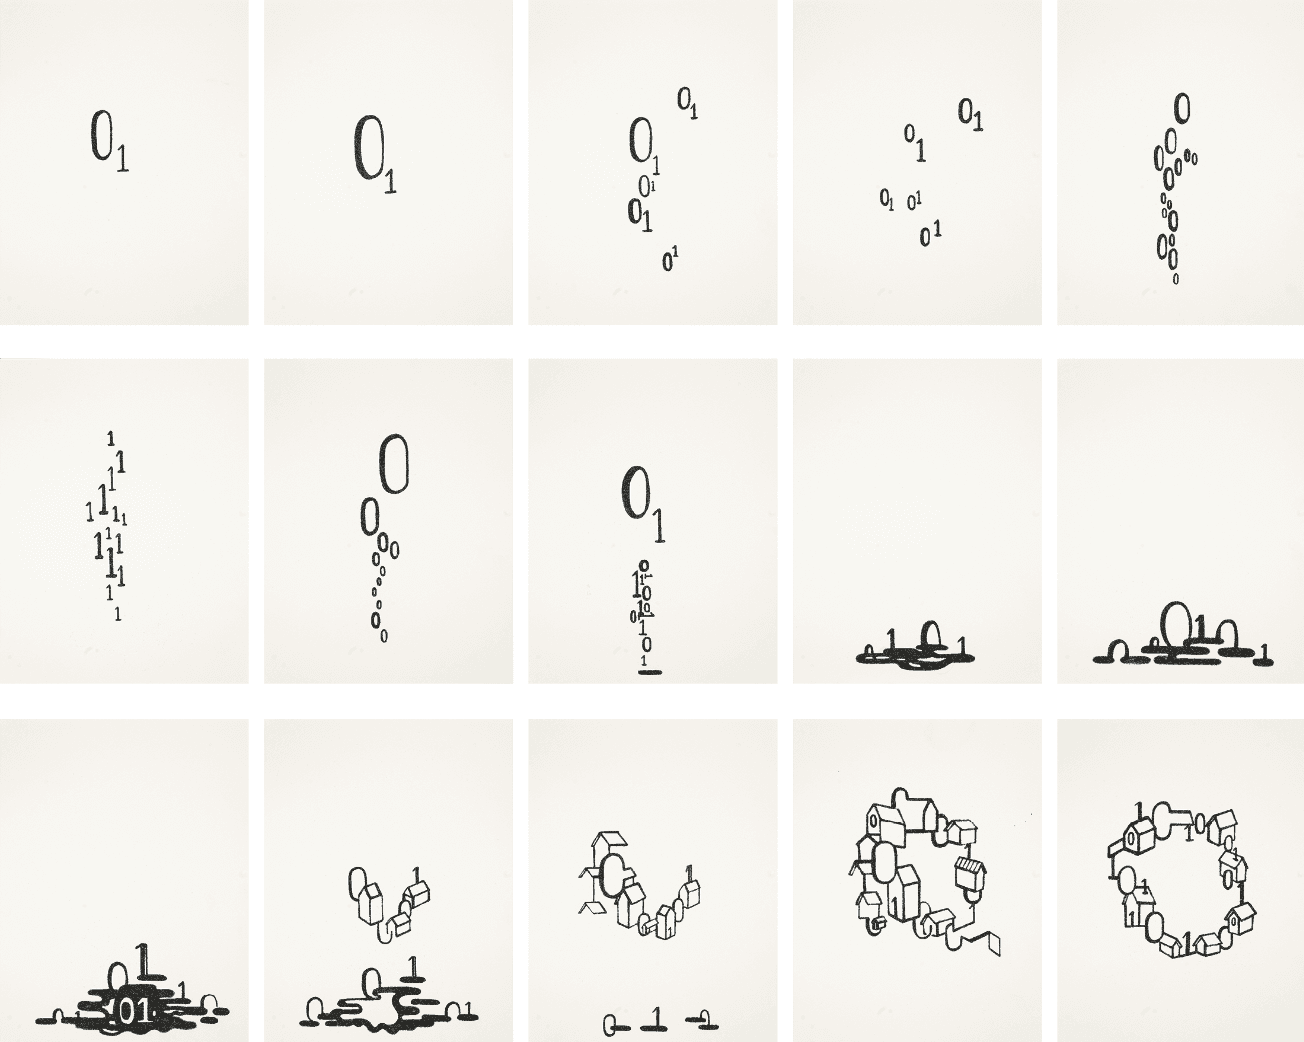 Het kunstwerk '01 is Fun' waarvoor kunstenaar Vittorio Roerade zich liet inspireren door publieksdata. Bestaat uit 15 tekeningen gebaseerd op nullen en enen.